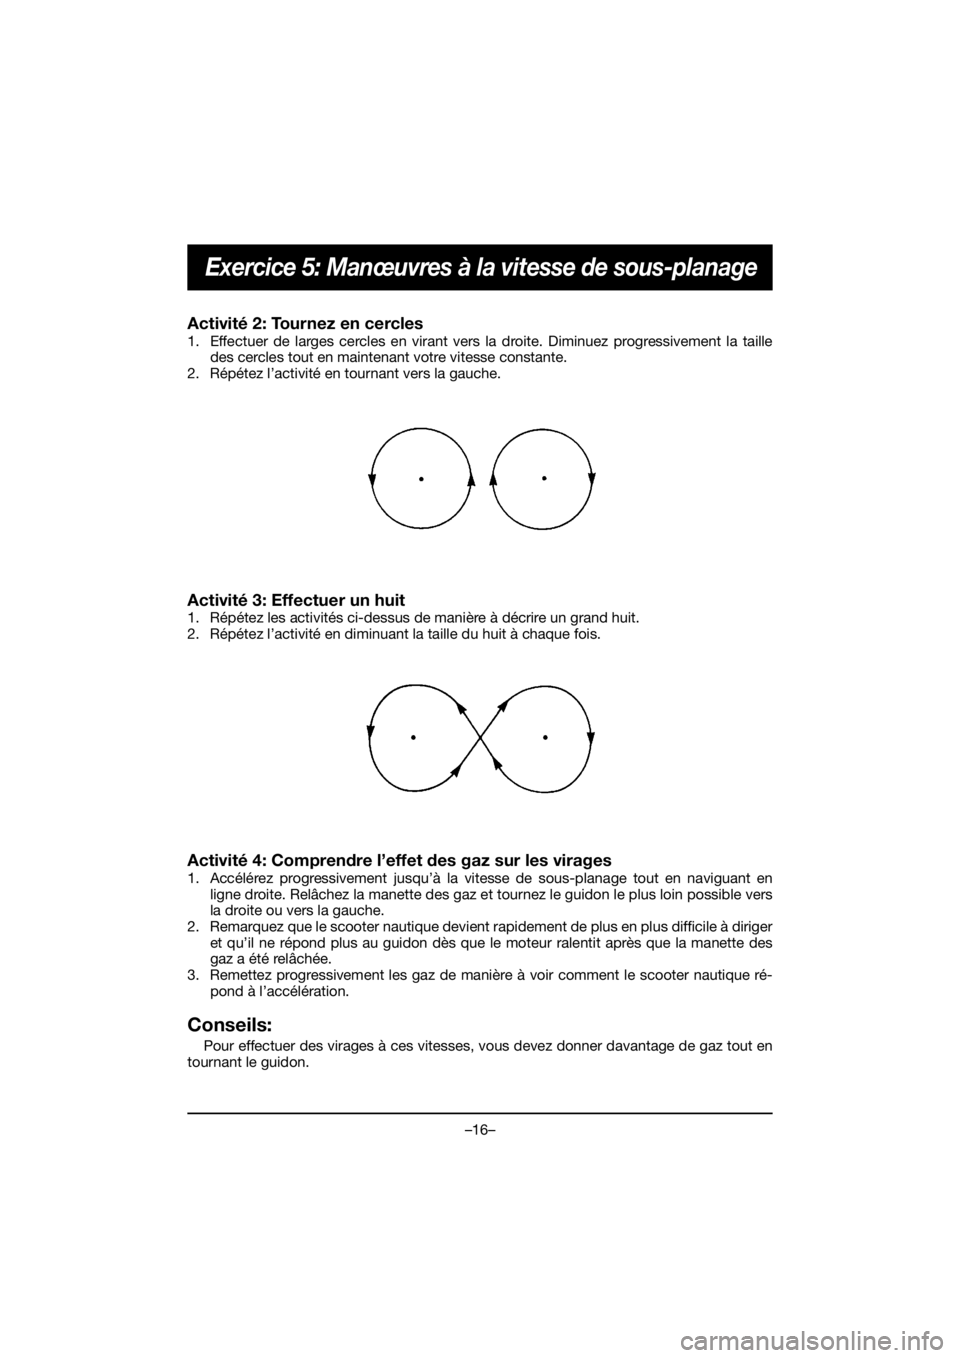 YAMAHA EX 2020  Manual de utilização (in Portuguese) –16–
Exercice 5: Manœuvres à la vitesse de sous-planage
Activité 2: Tournez en cercles 
1. Effectuer de larges cercles en virant vers la droite. Diminuez progressivement la taille
des cercles t